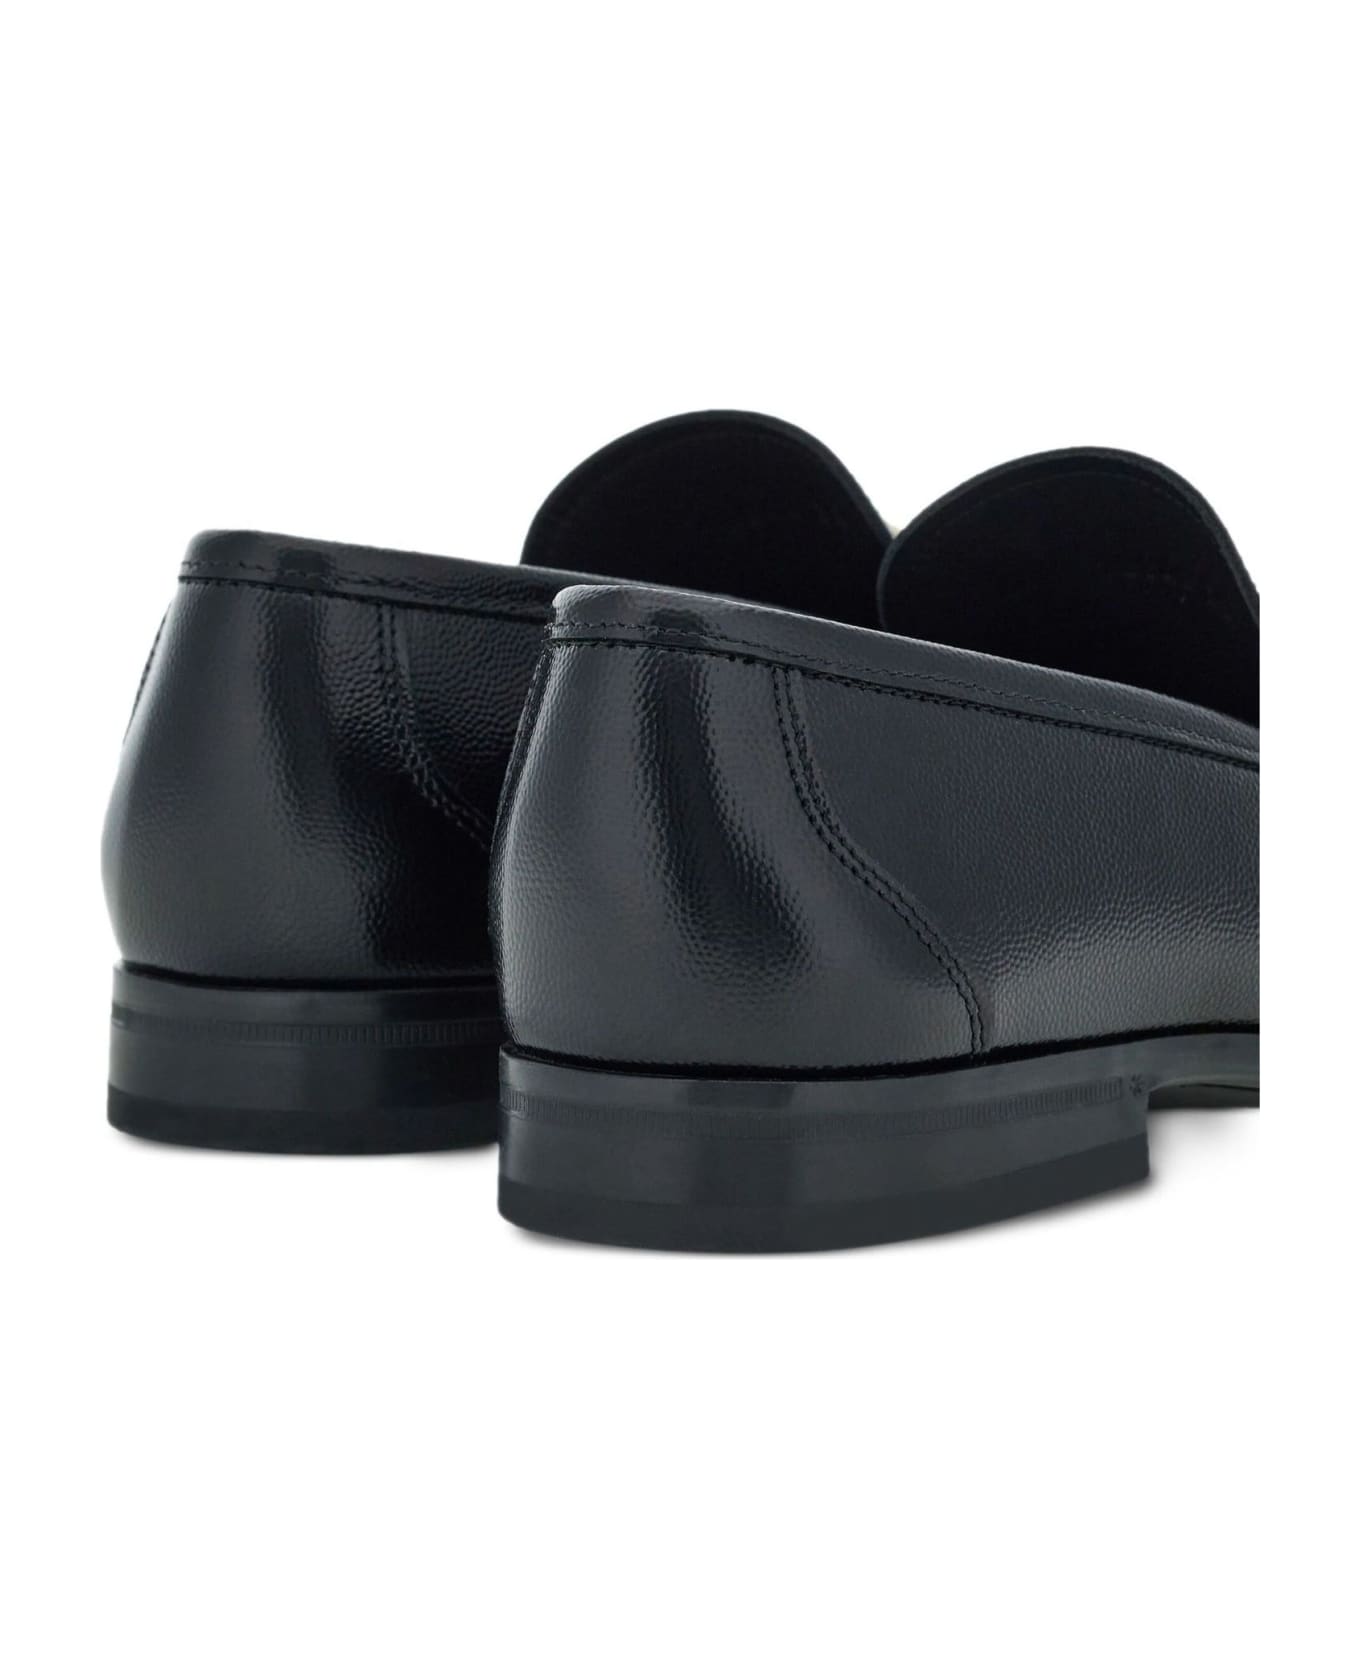 Ferragamo Black Leather Loafer - Black